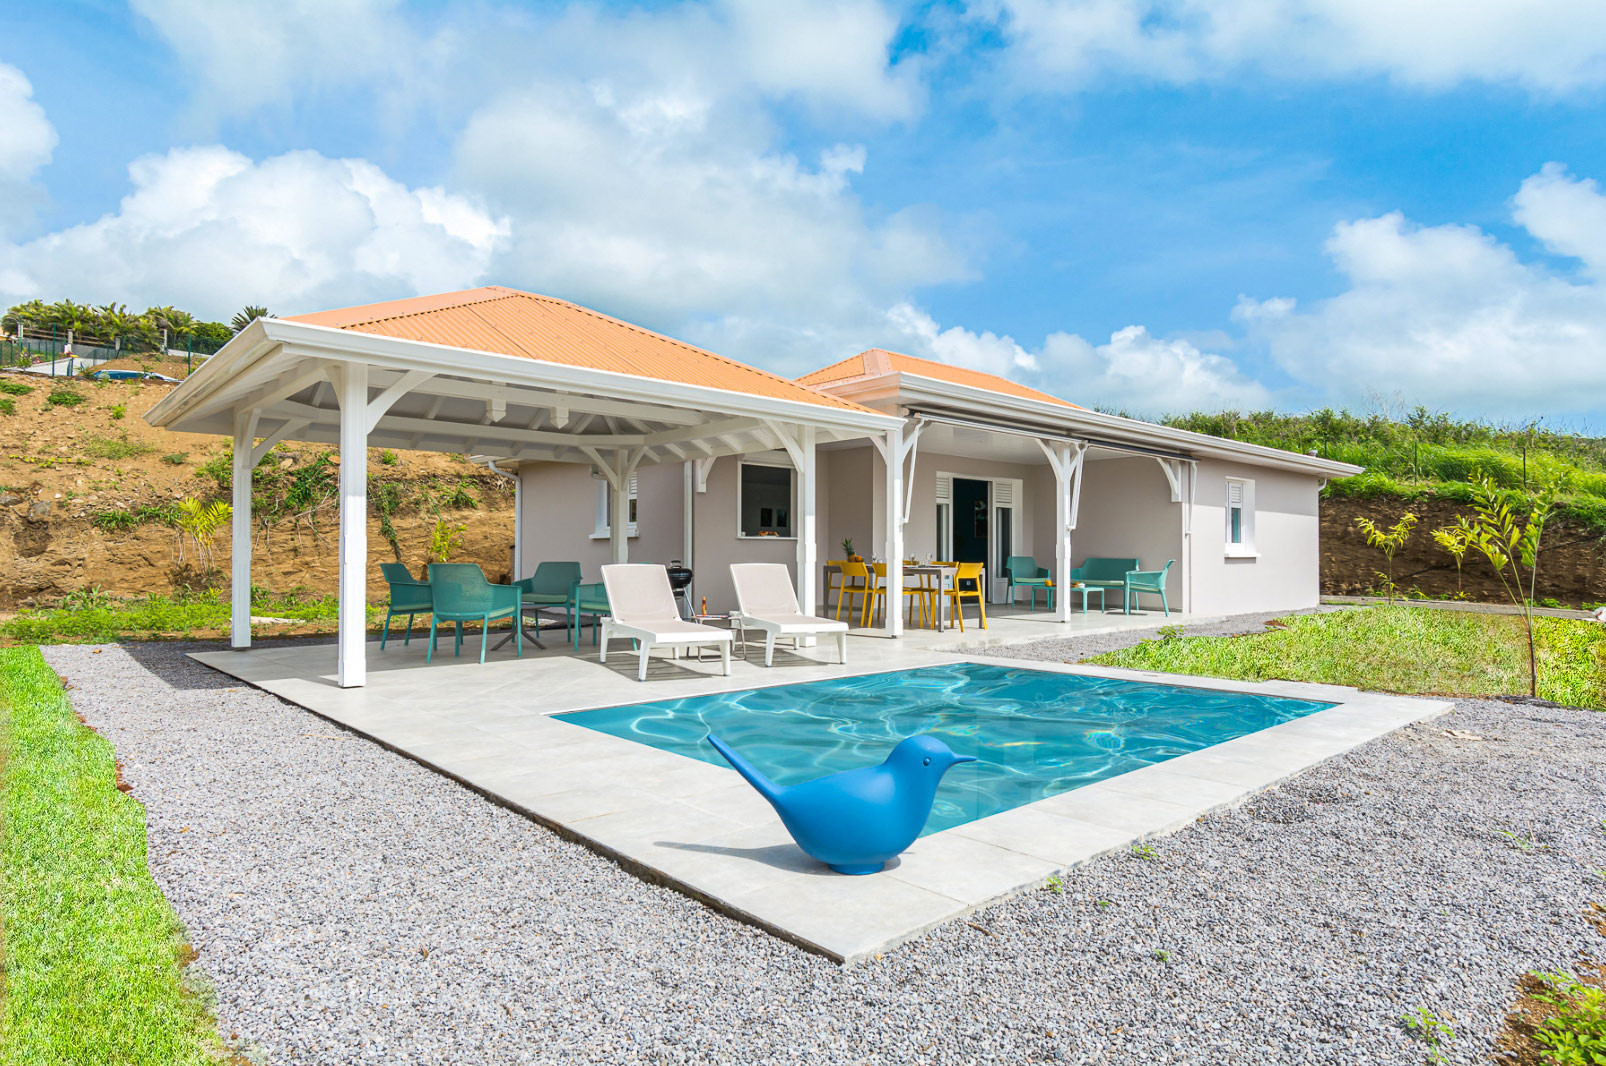 DAME DU LAC III le Vauclin location villa Martinique 3 ch vue mer et piscine - 